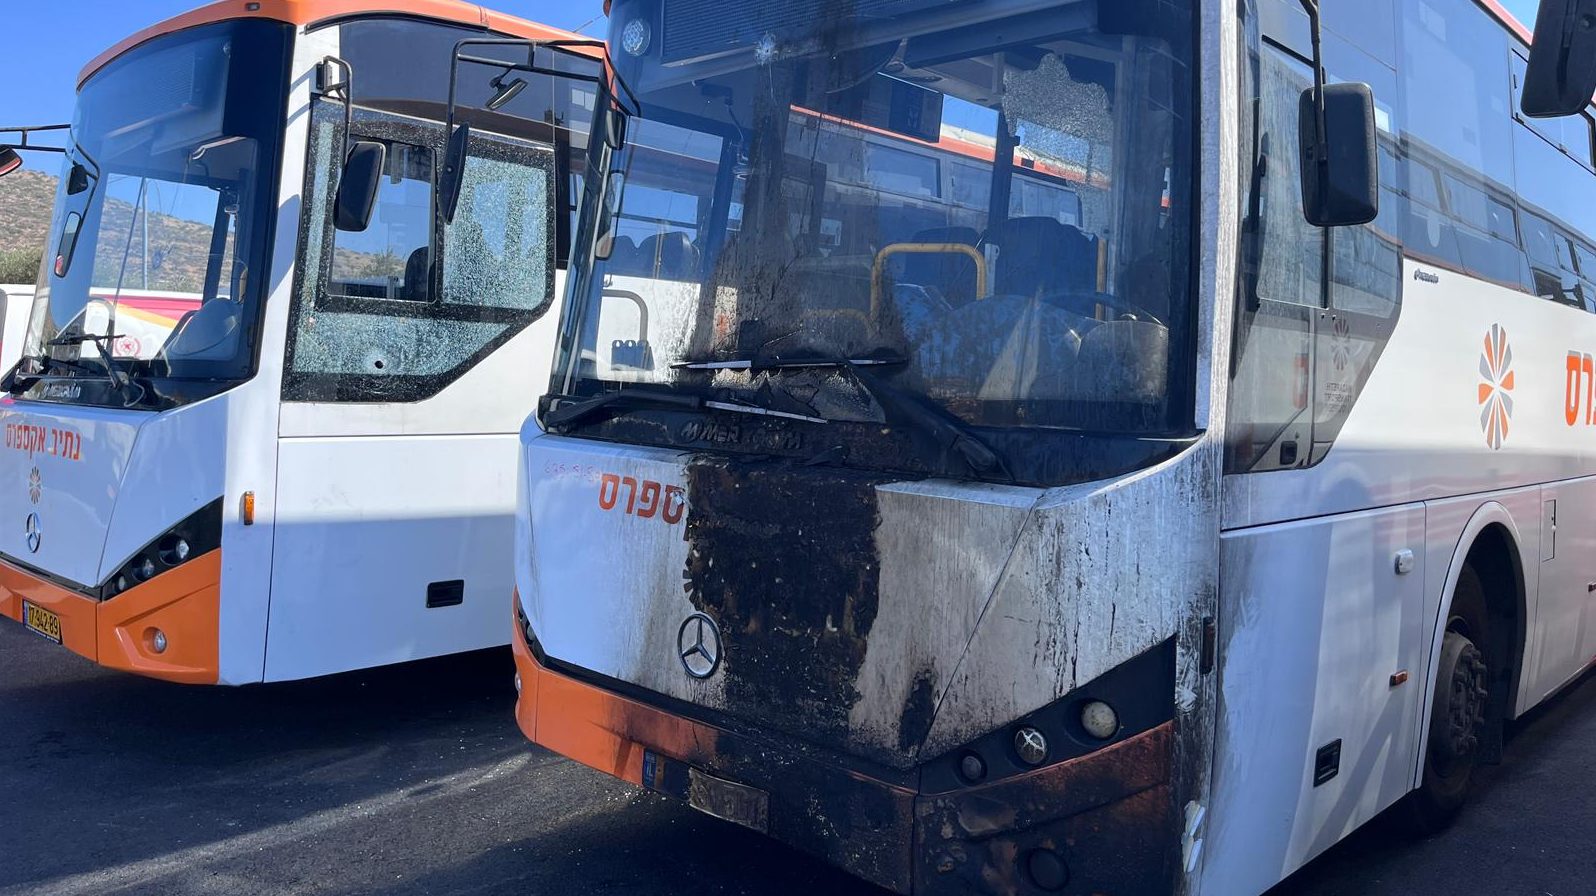 האוטובוסים של קבוצת עפיפי שנפגעו בכפר מע'אר ספגו נזק קל וכנראה לא יופעל ביטוח